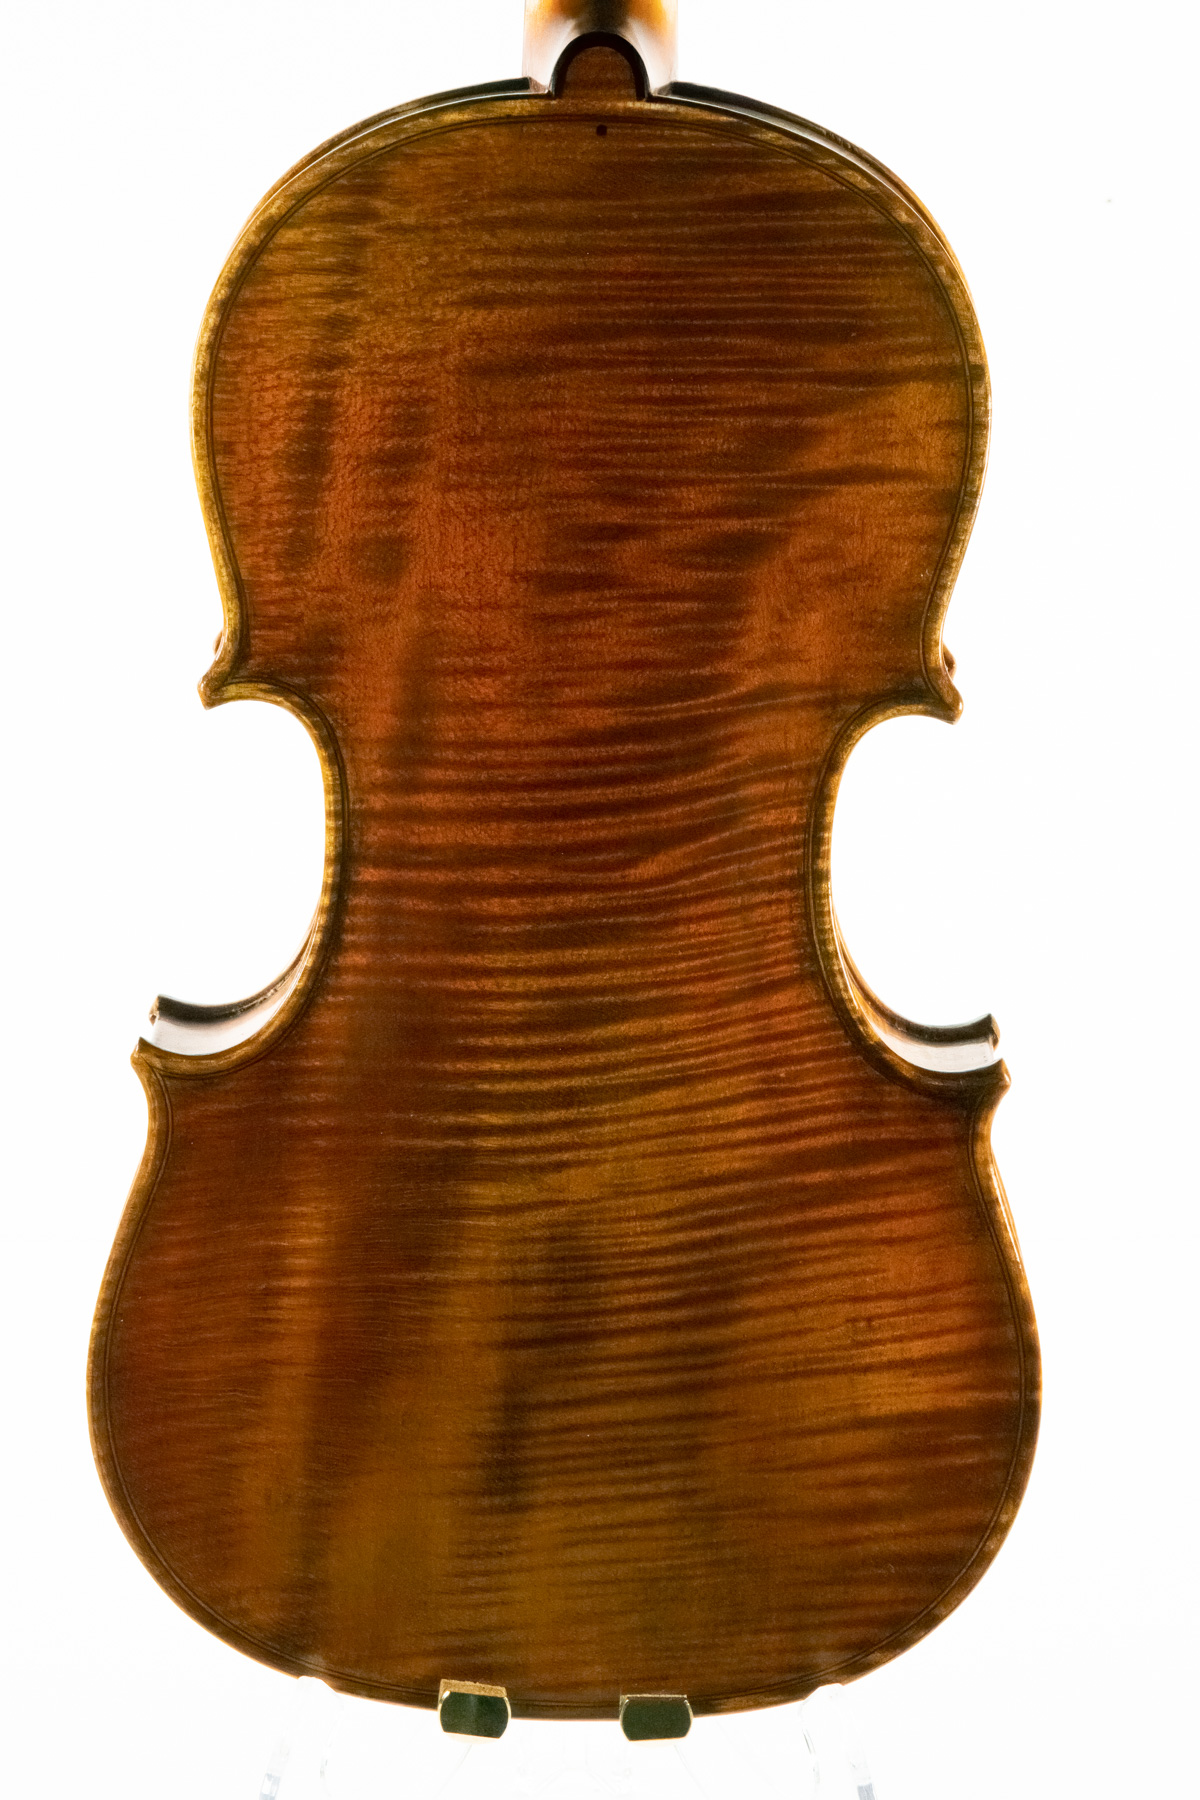 Archangel Raphael Violin Back